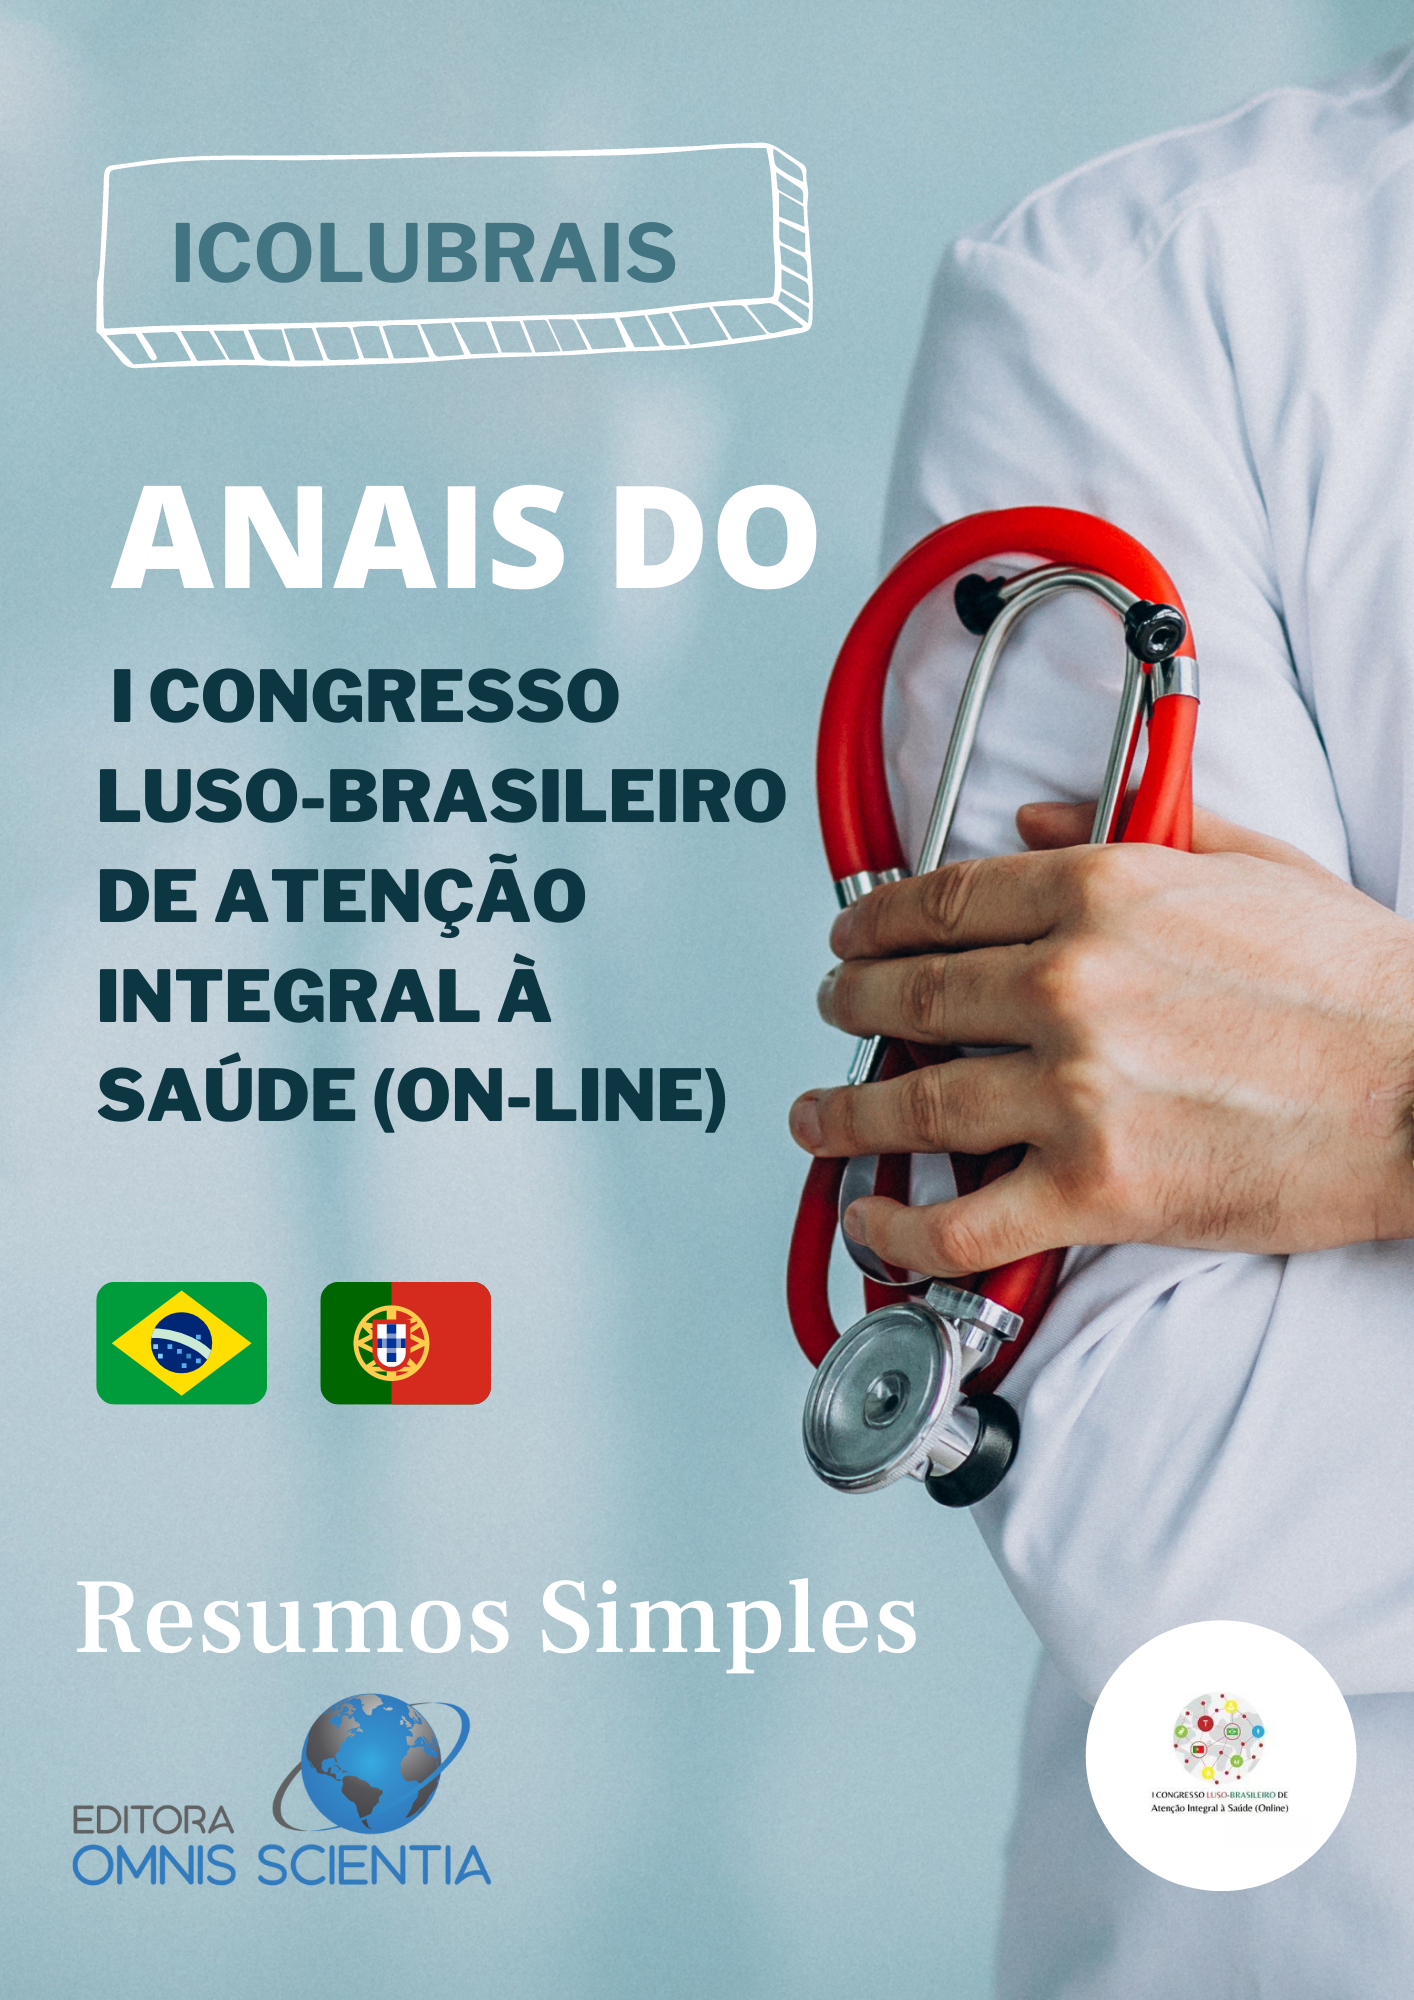 ANAIS DO I CONGRESSO LUSO-BRASILEIRO DE ATENÇÃO INTEGRAL À SAÚDE (ON-LINE) – RESUMOS SIMPLES